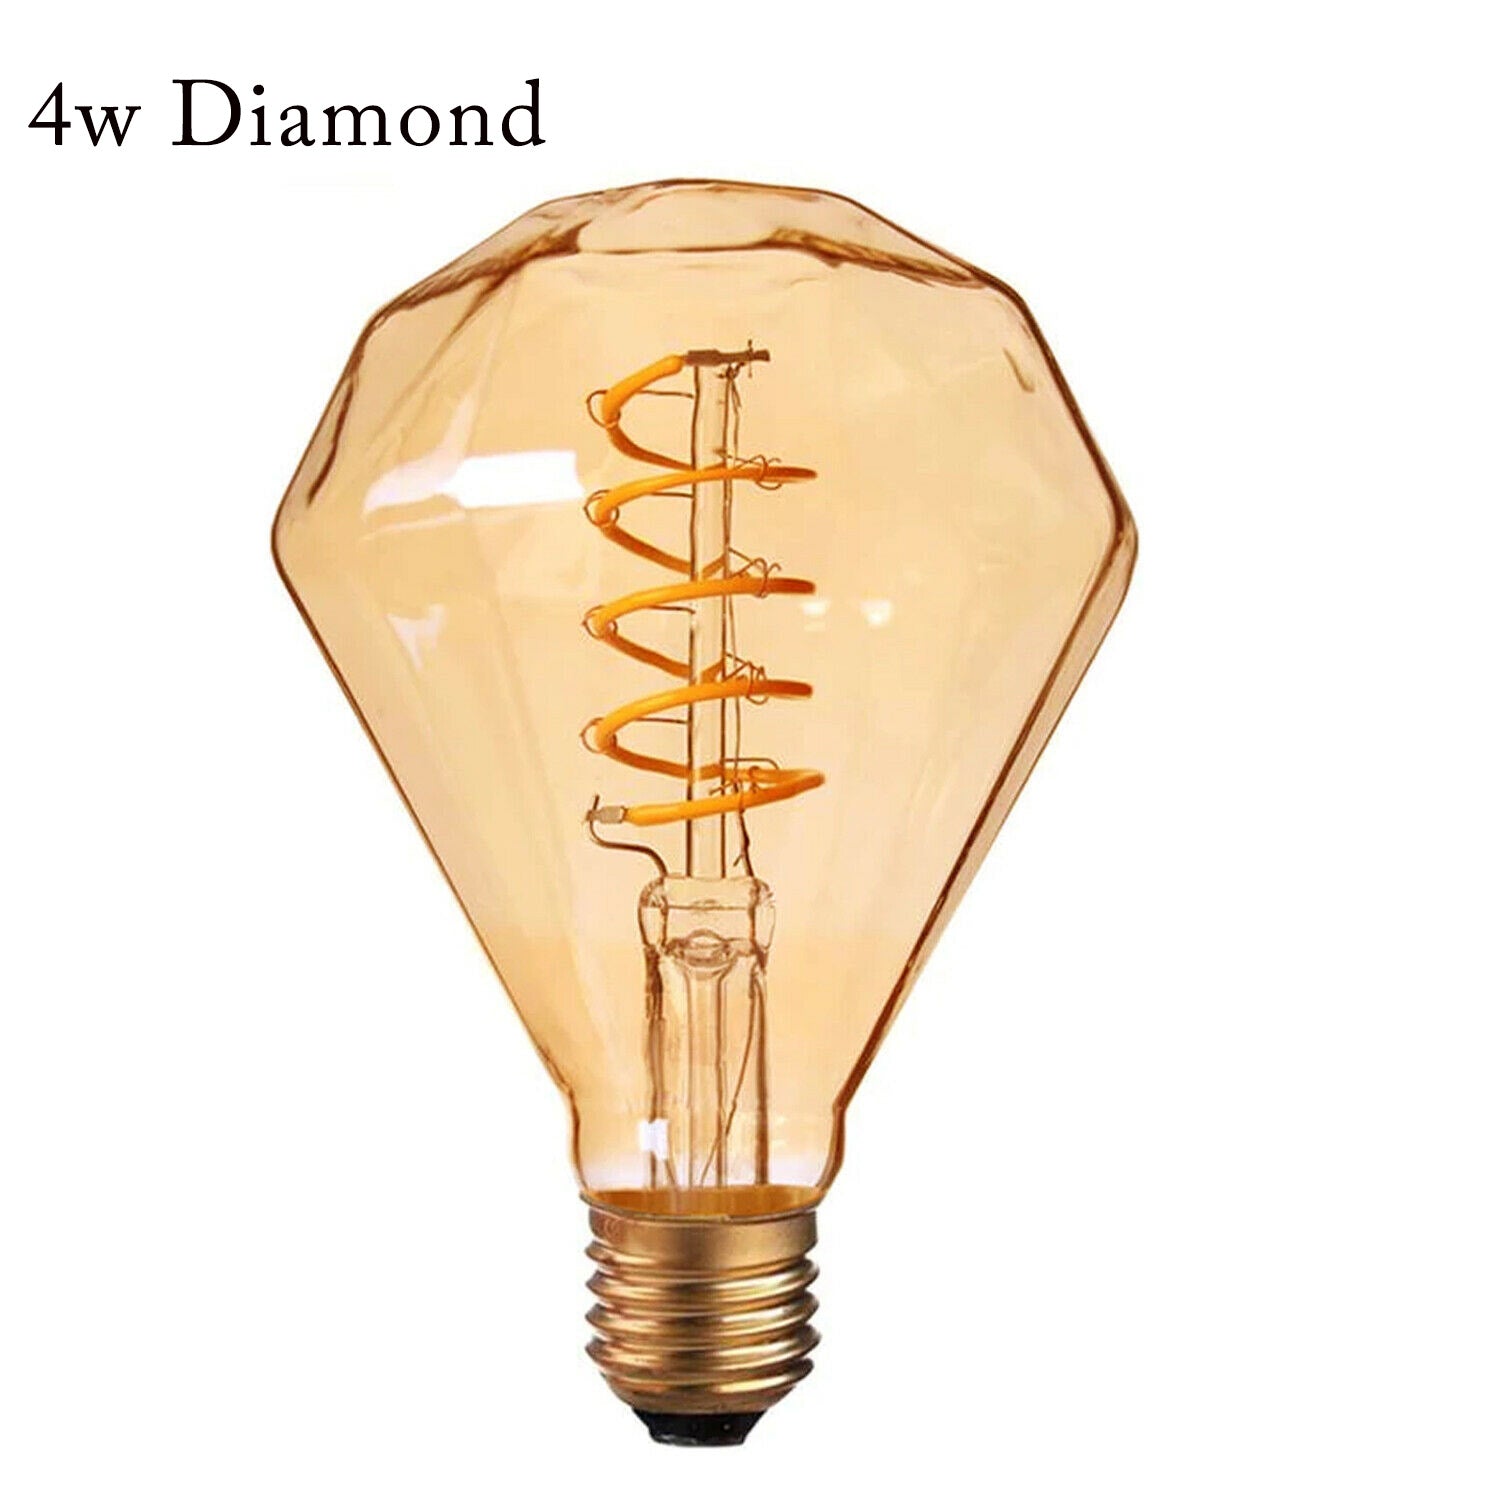 diamond LED Bulb 4W E27 Base